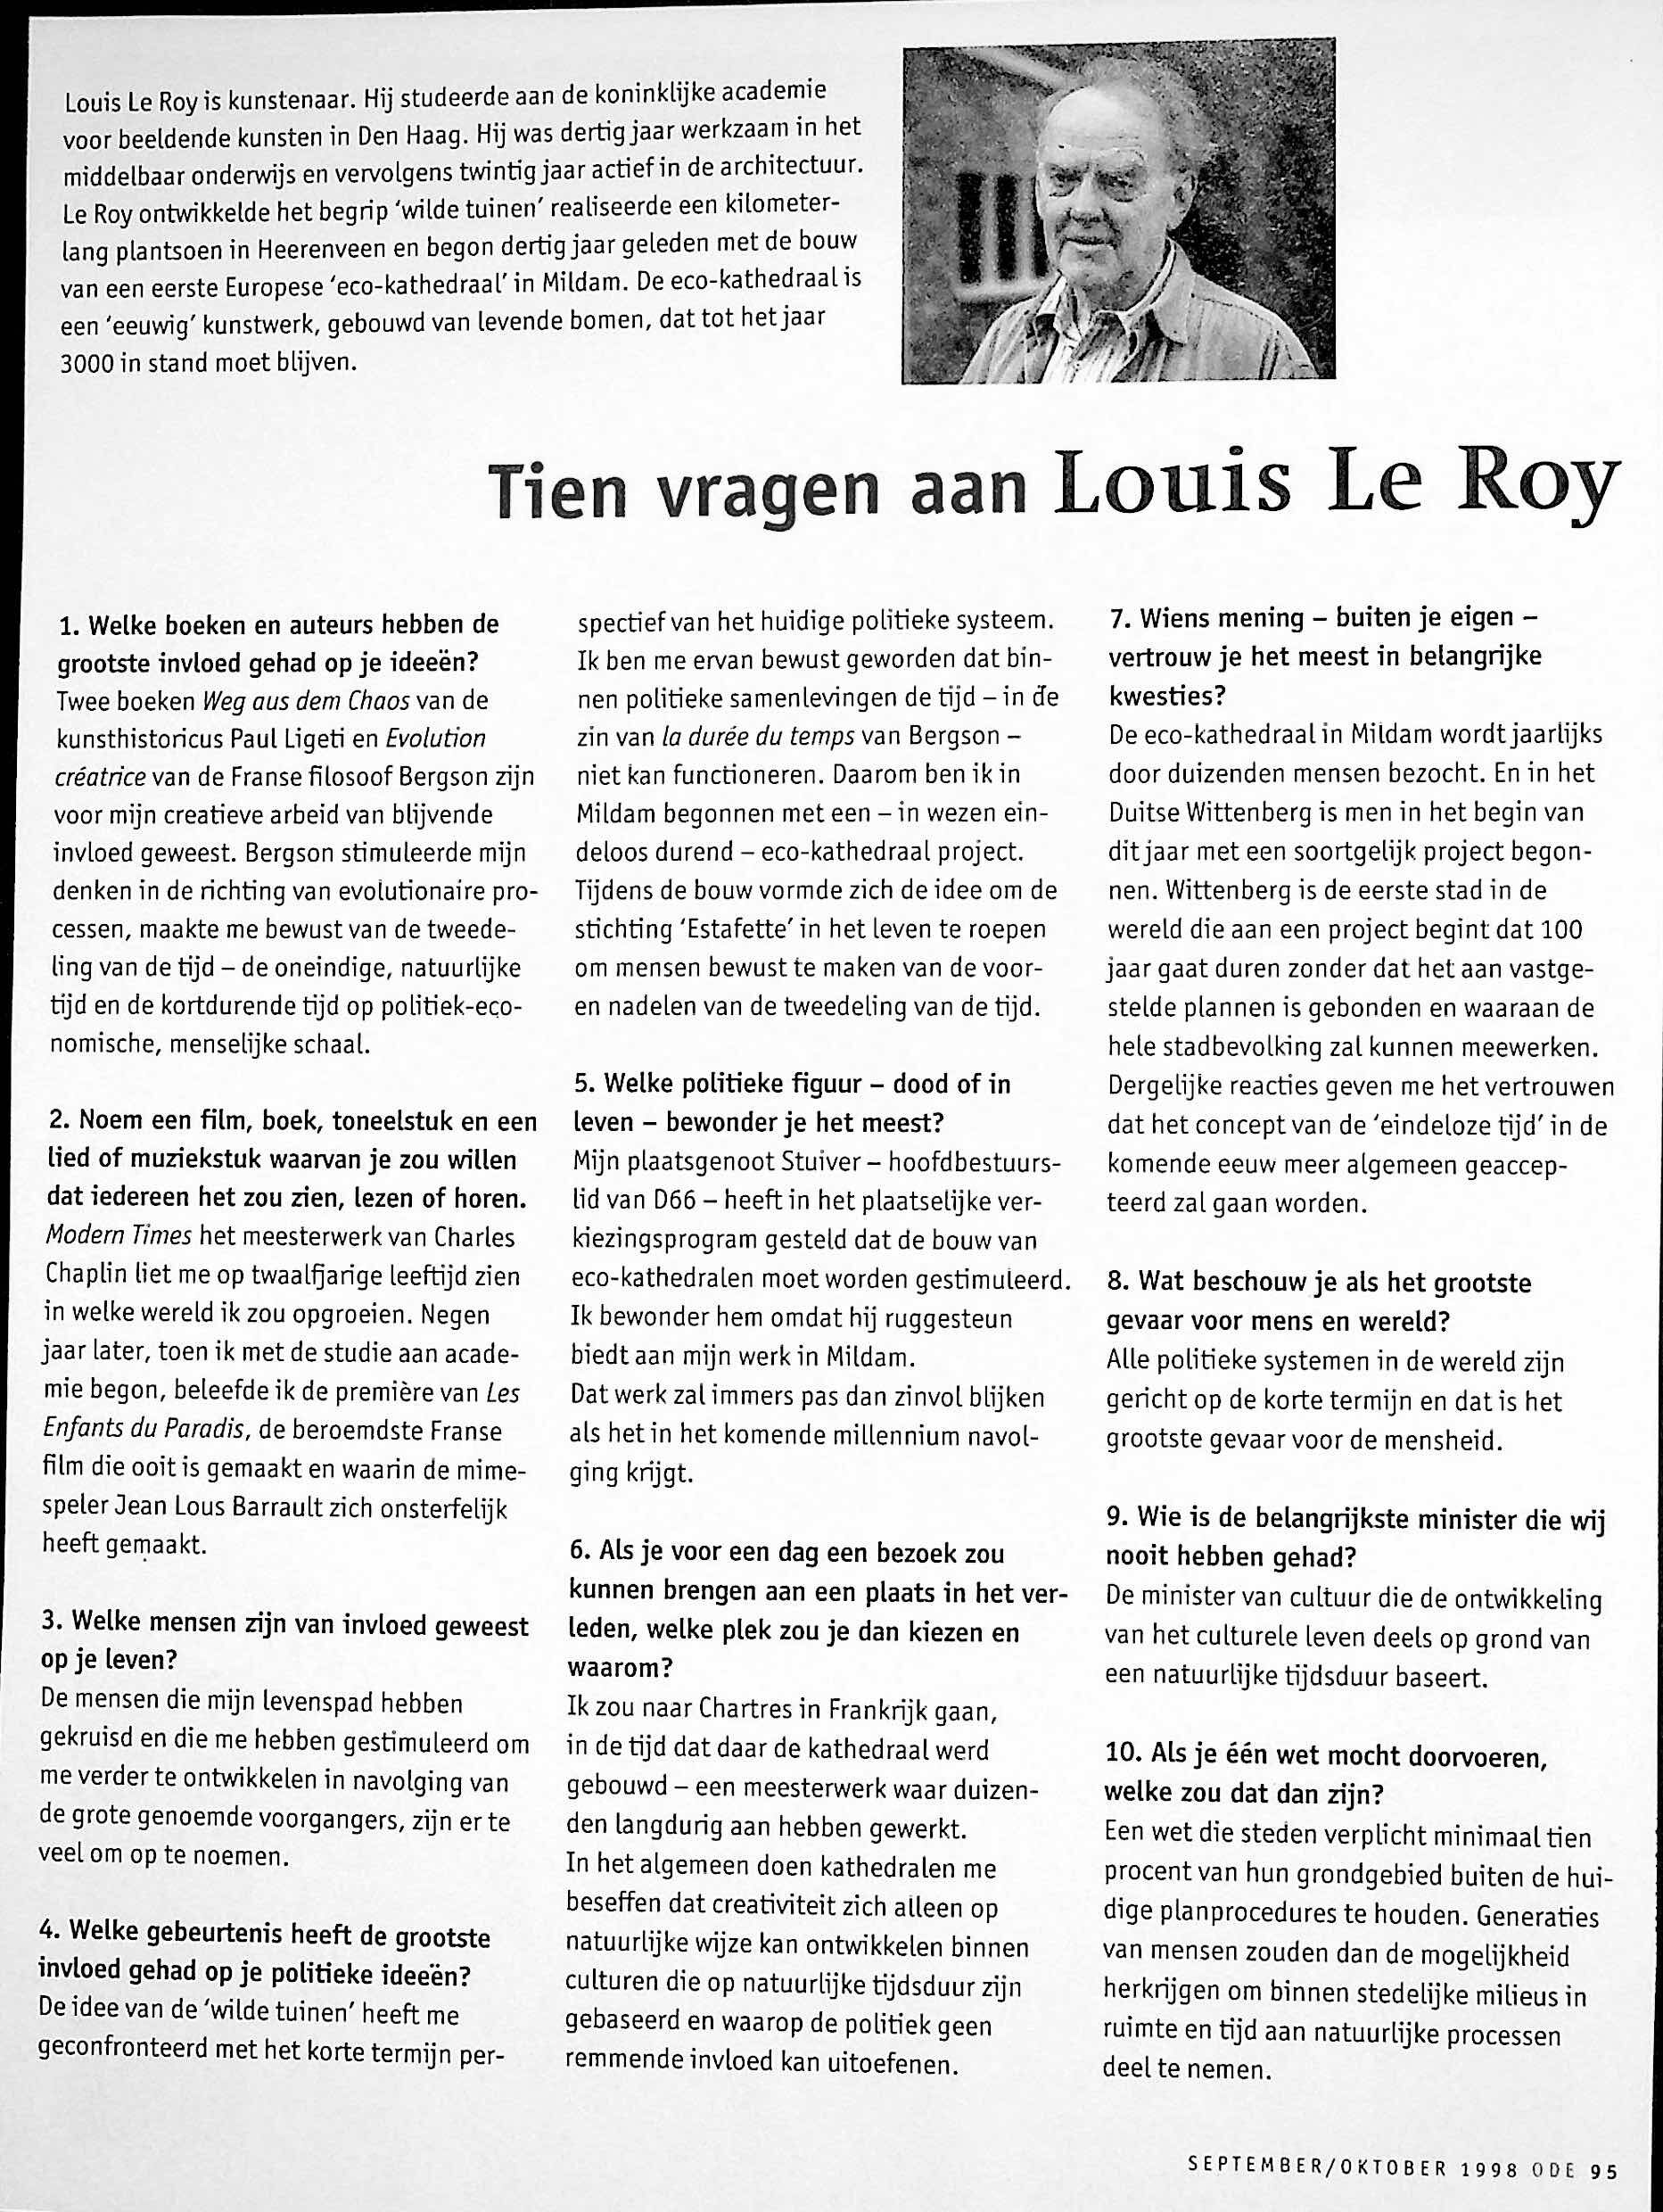 Tein vragen aan Louis le Roy 001